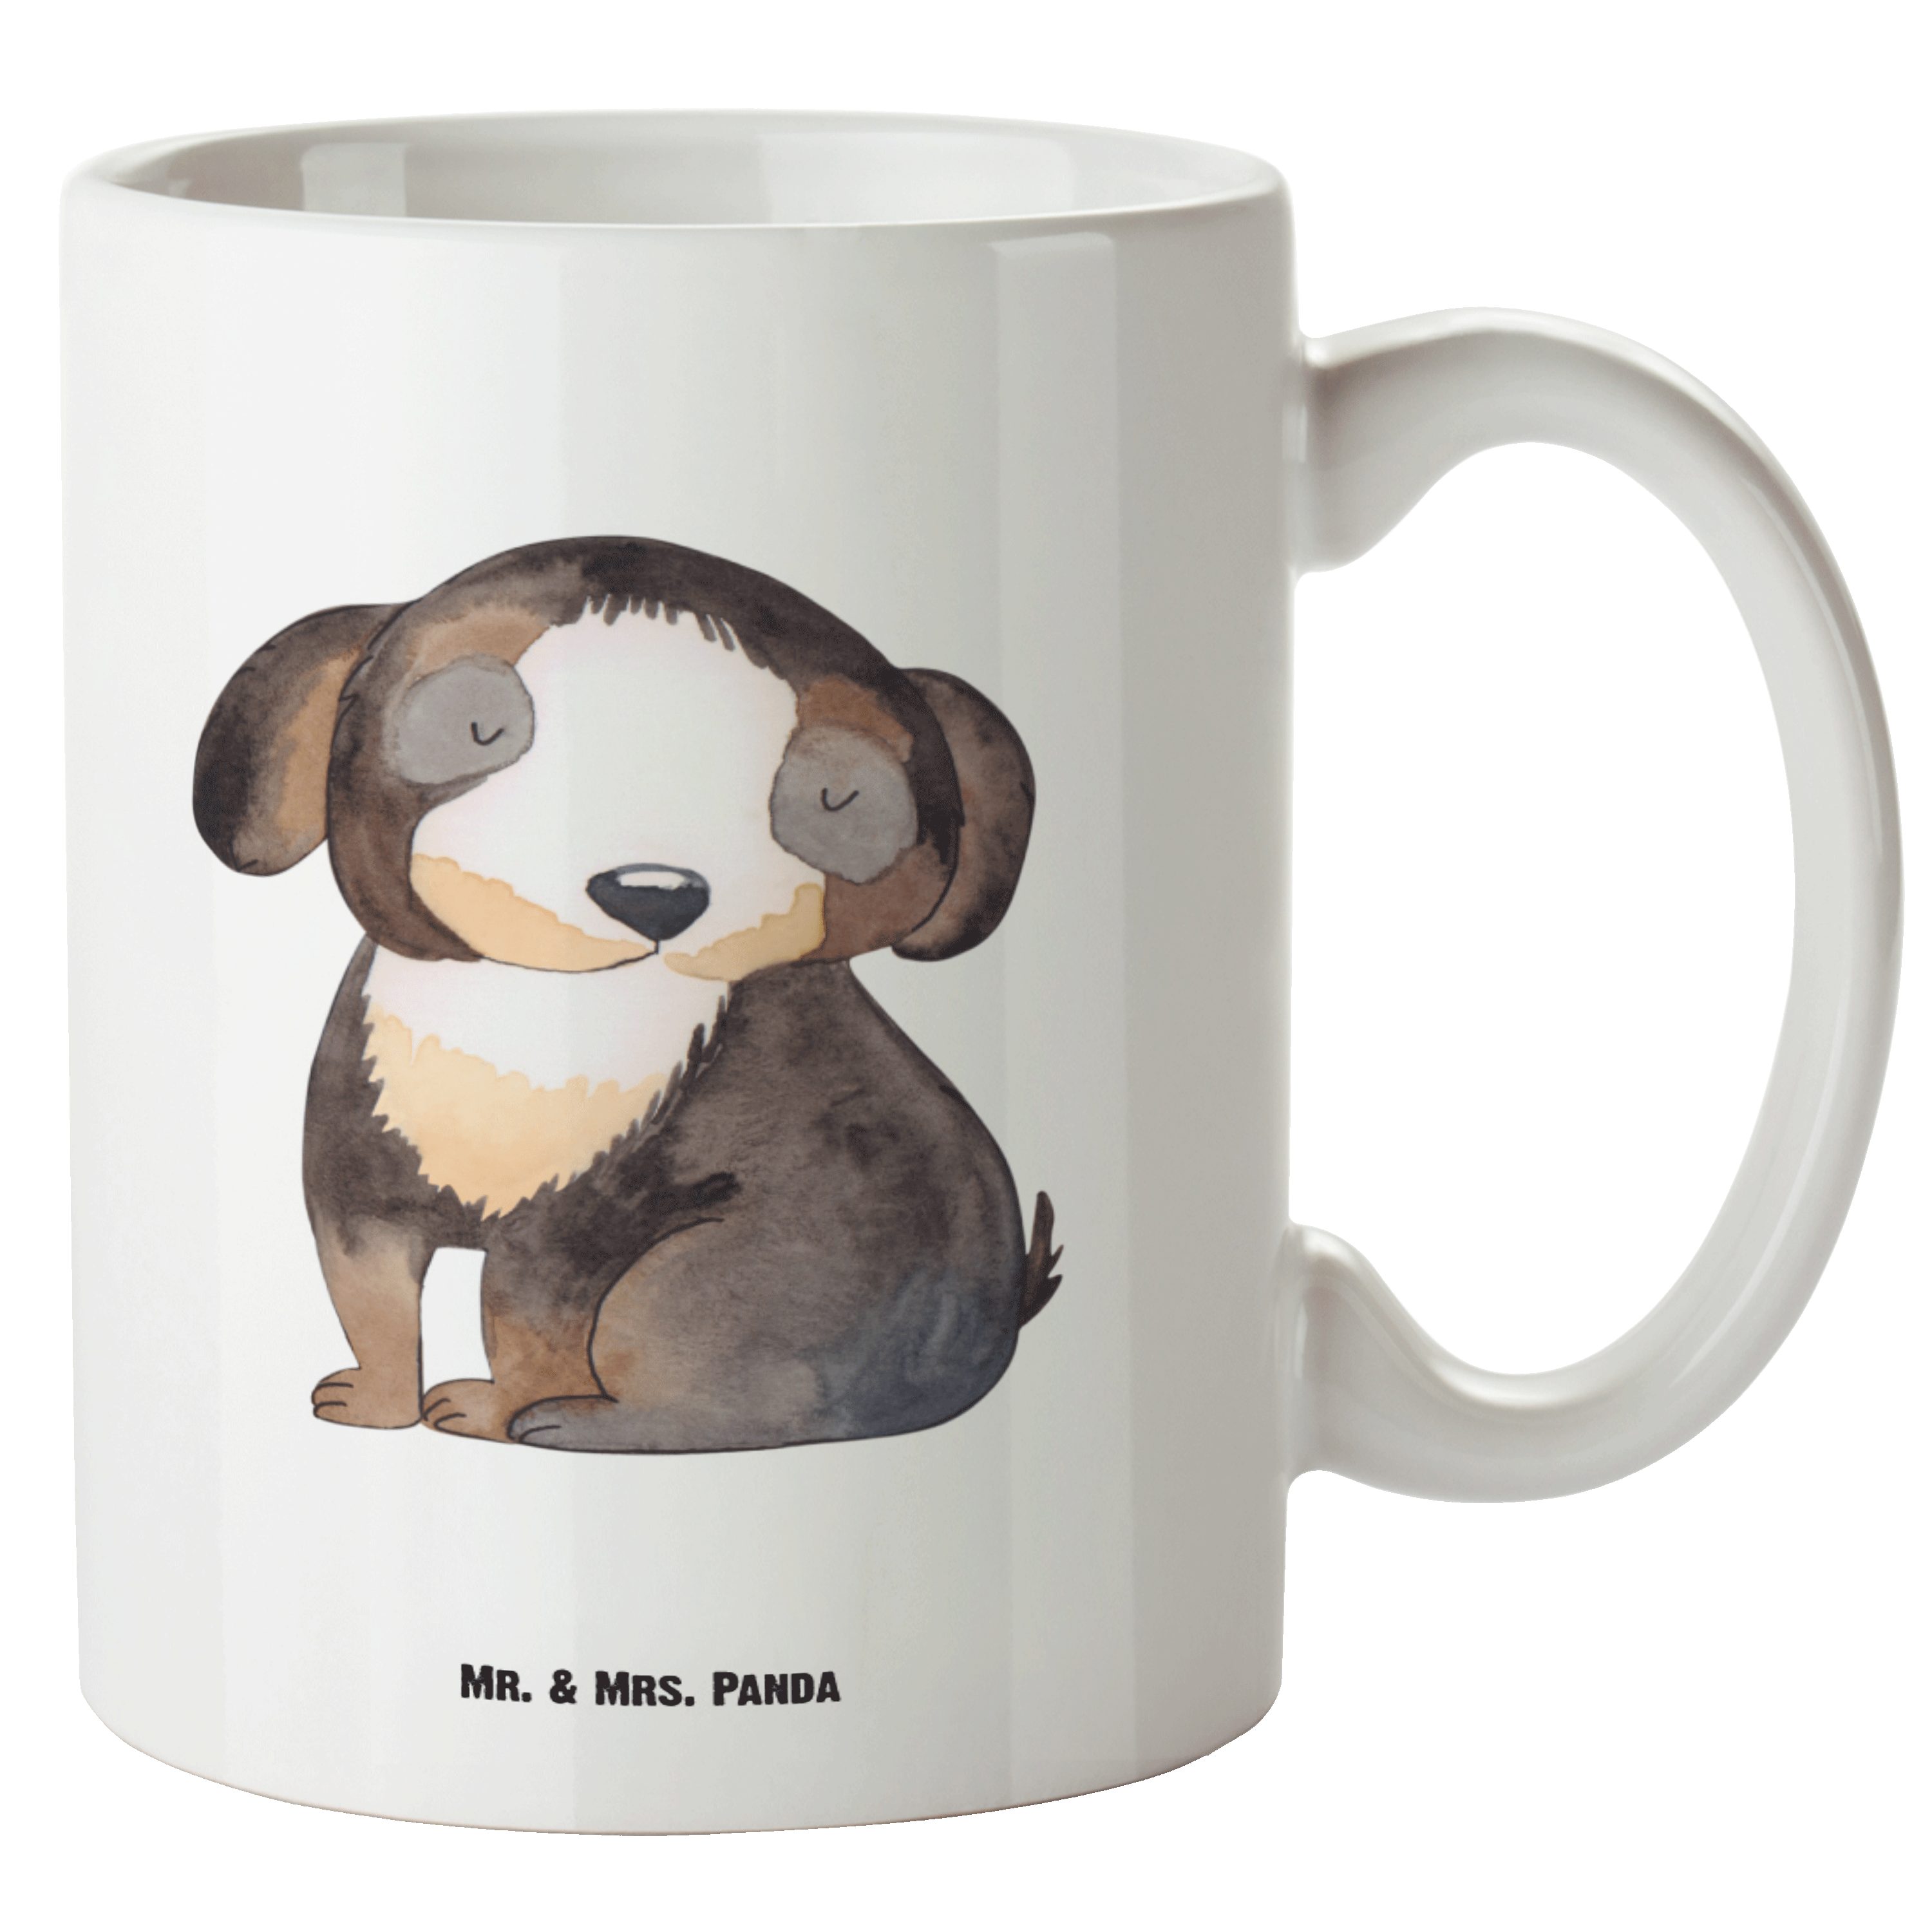 Mr. & Mrs. Panda Tasse Hund entspannt - Weiß - Geschenk, Hundeliebe, Sprüche, Groß, Große Ta, XL Tasse Keramik